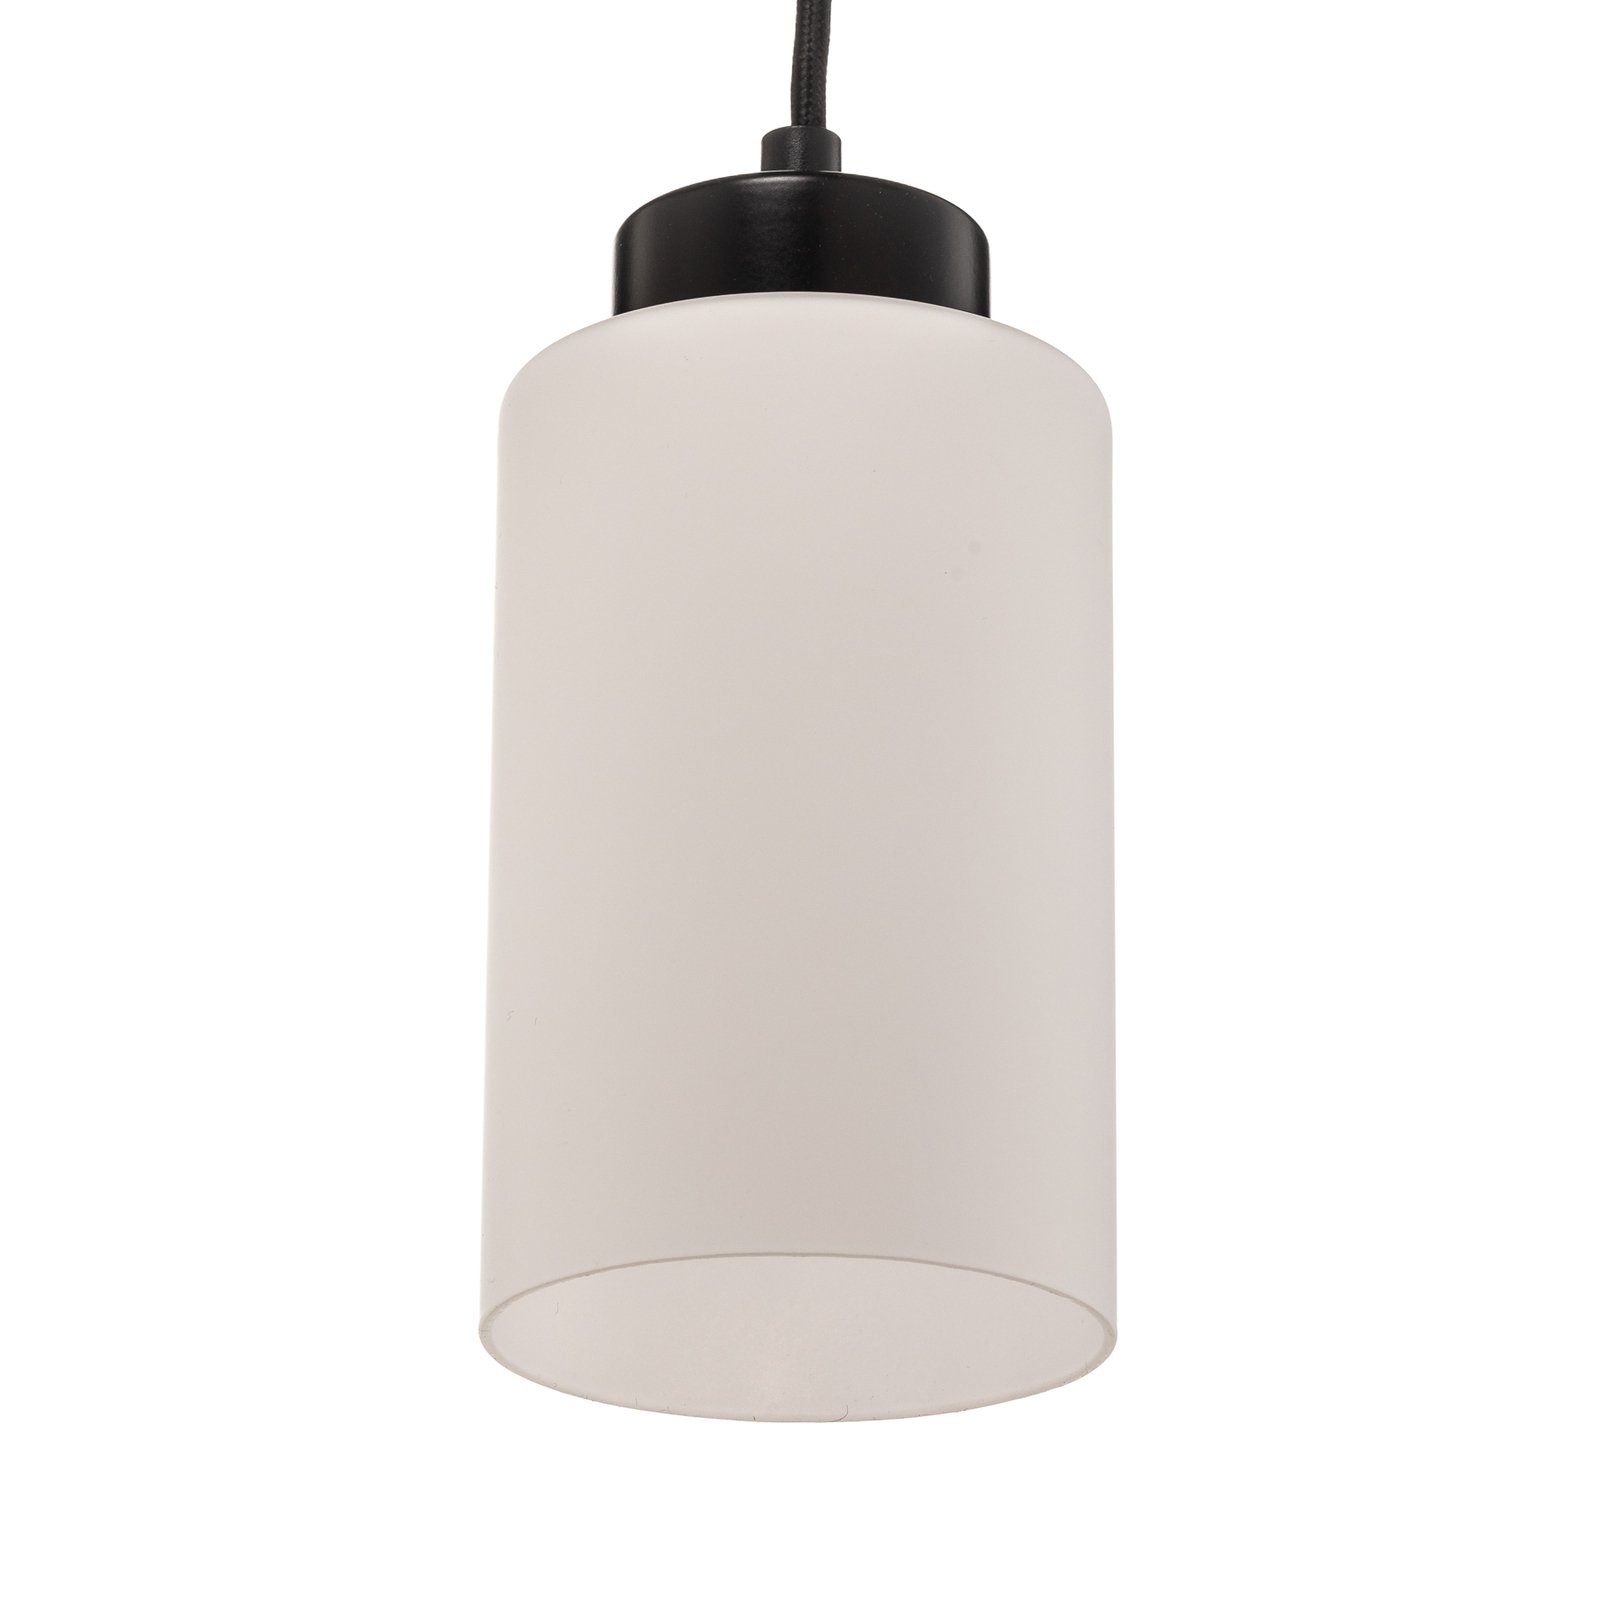 Vitrio pendant light, 3-bulb, long, black/white